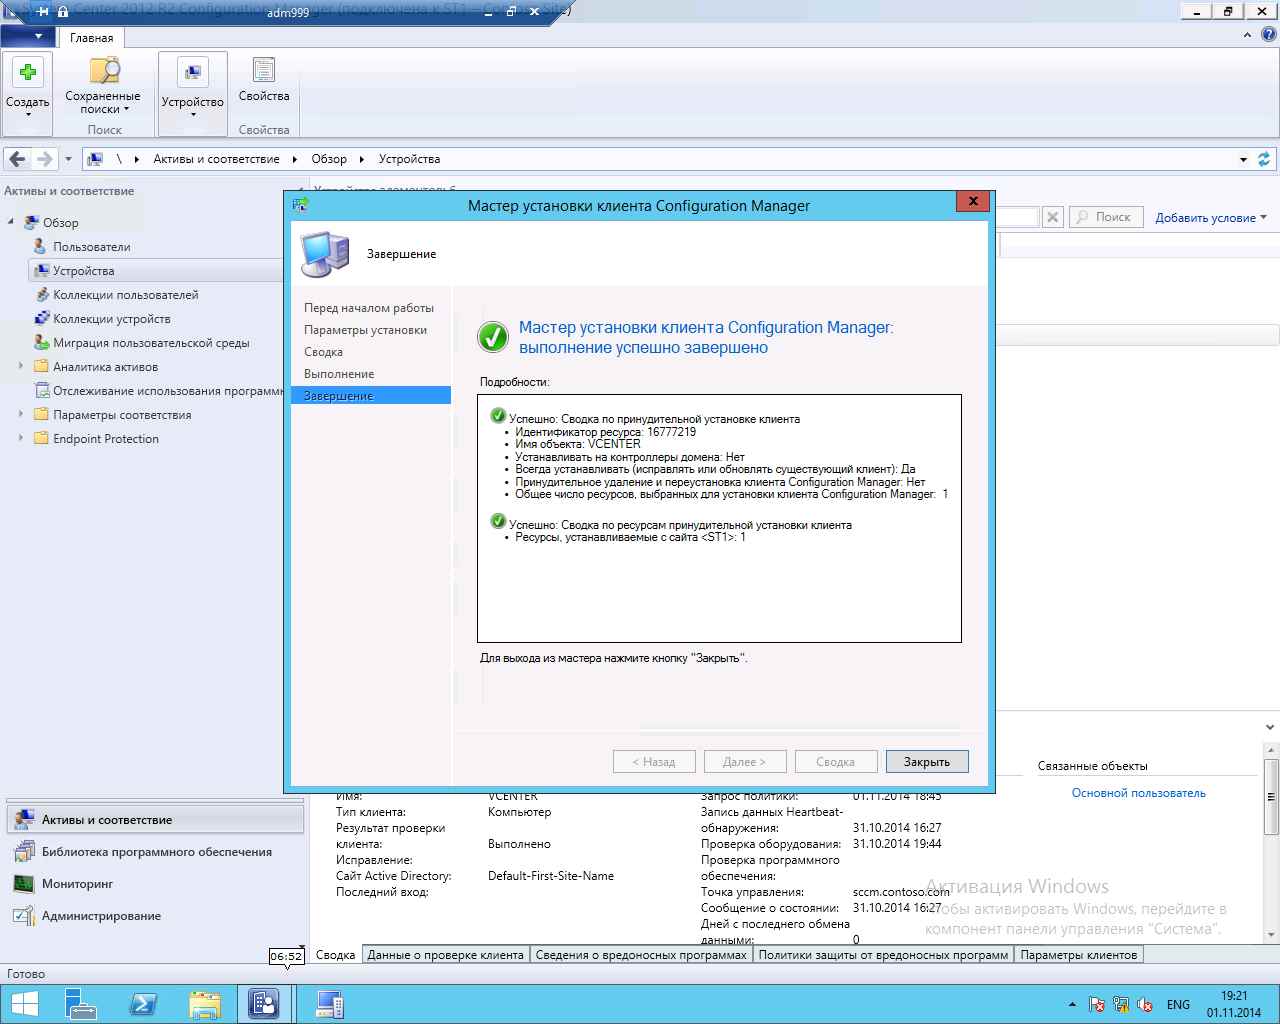 Как установить SCCM (System Center Configuration Manager) 2012R2 в windows server 2012R2 -6 часть. Как принудительно установить клиента-12